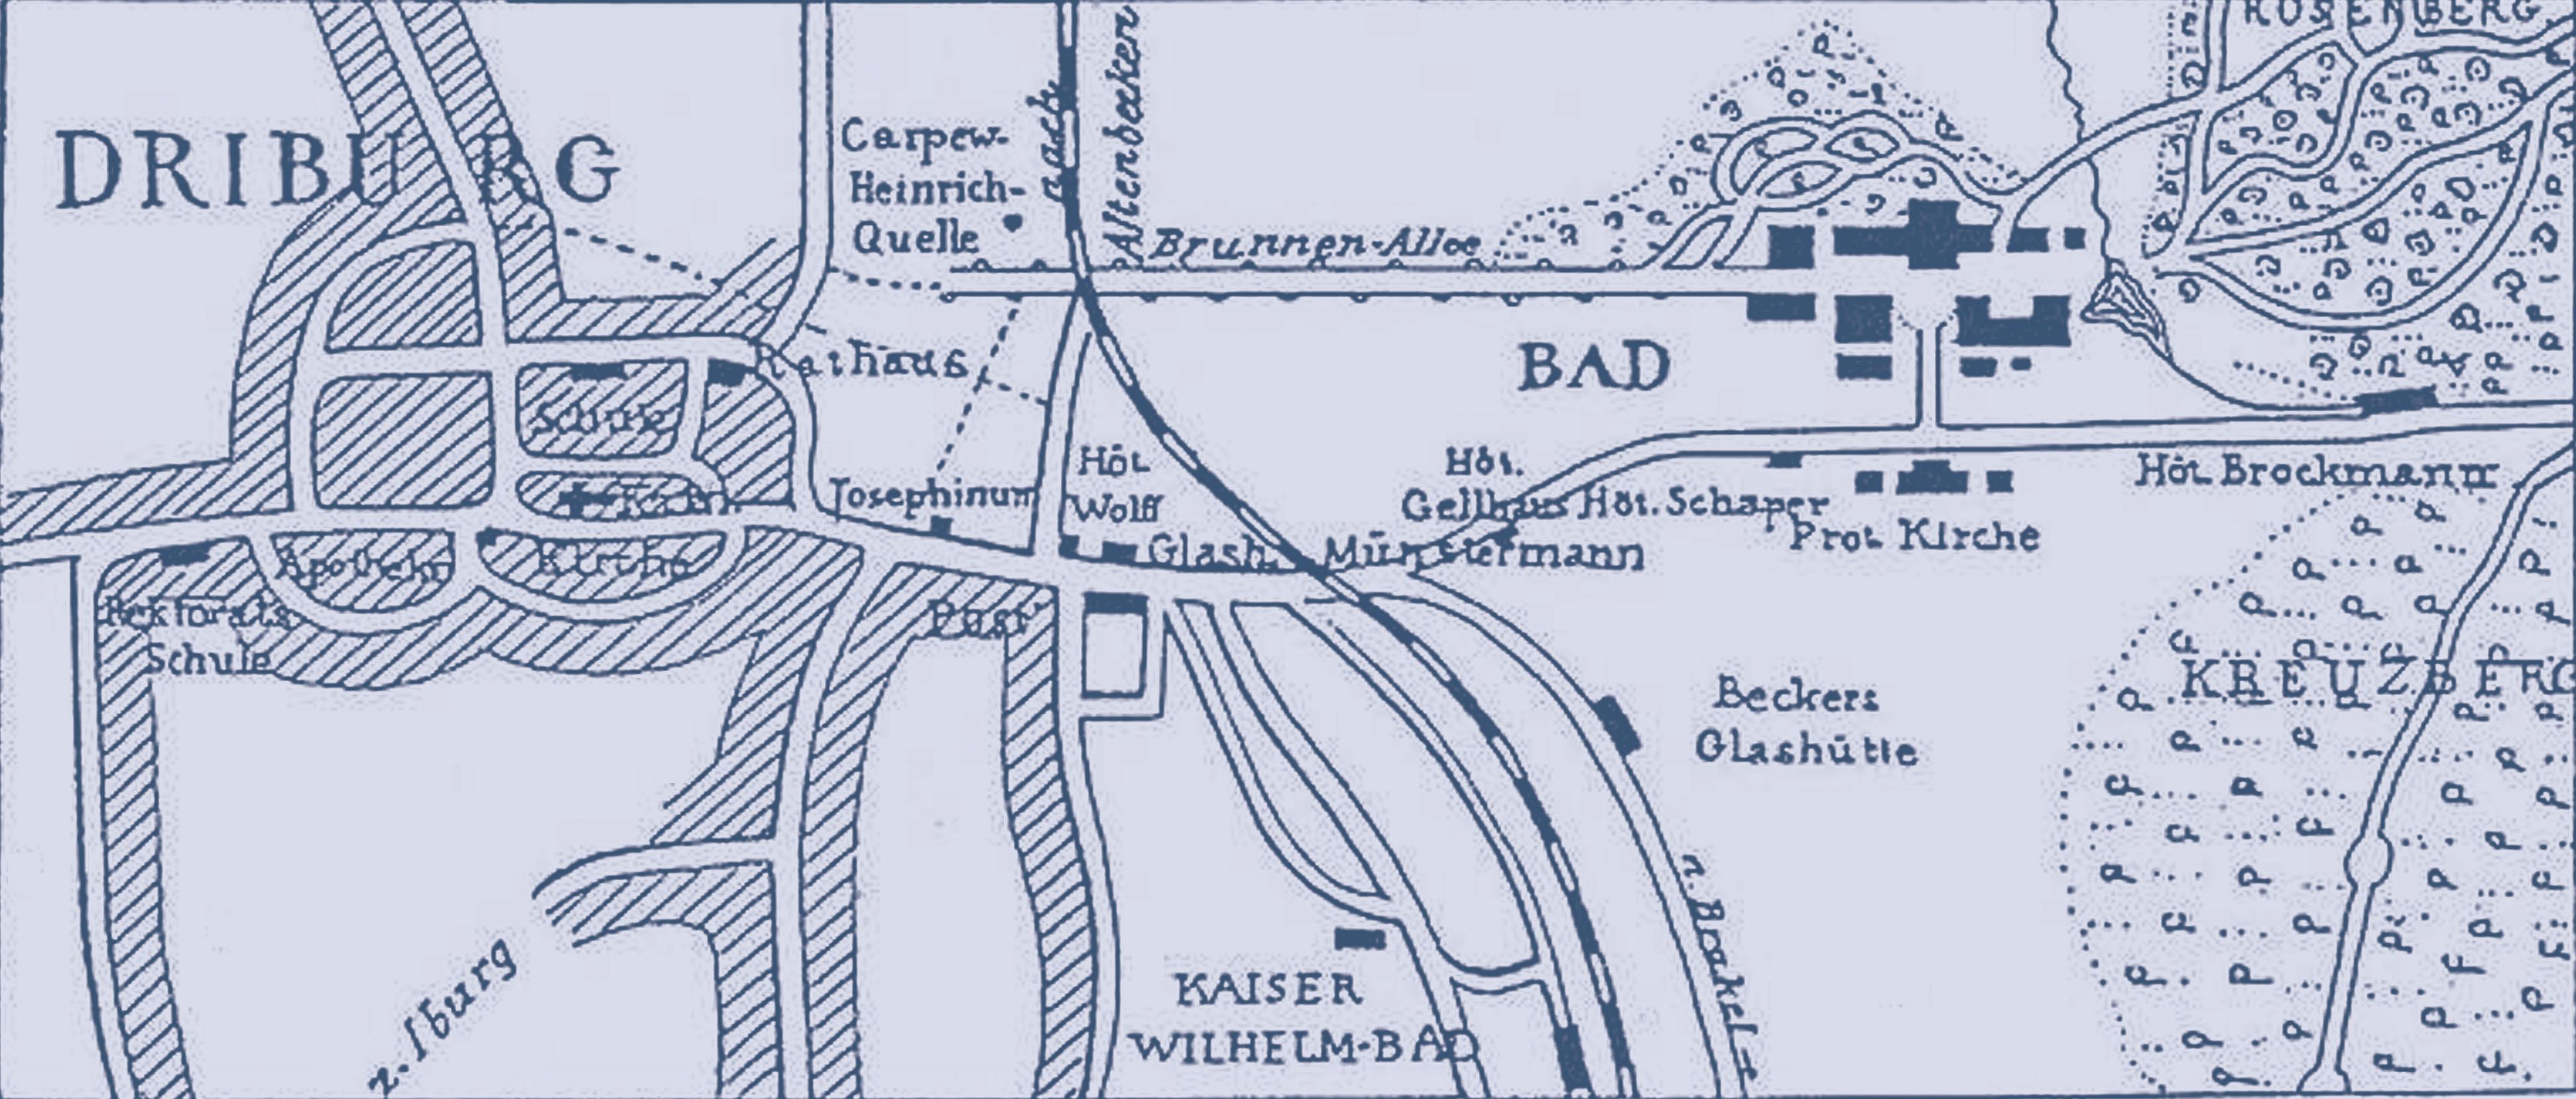 Stadtplan Bad Driburg von 1898